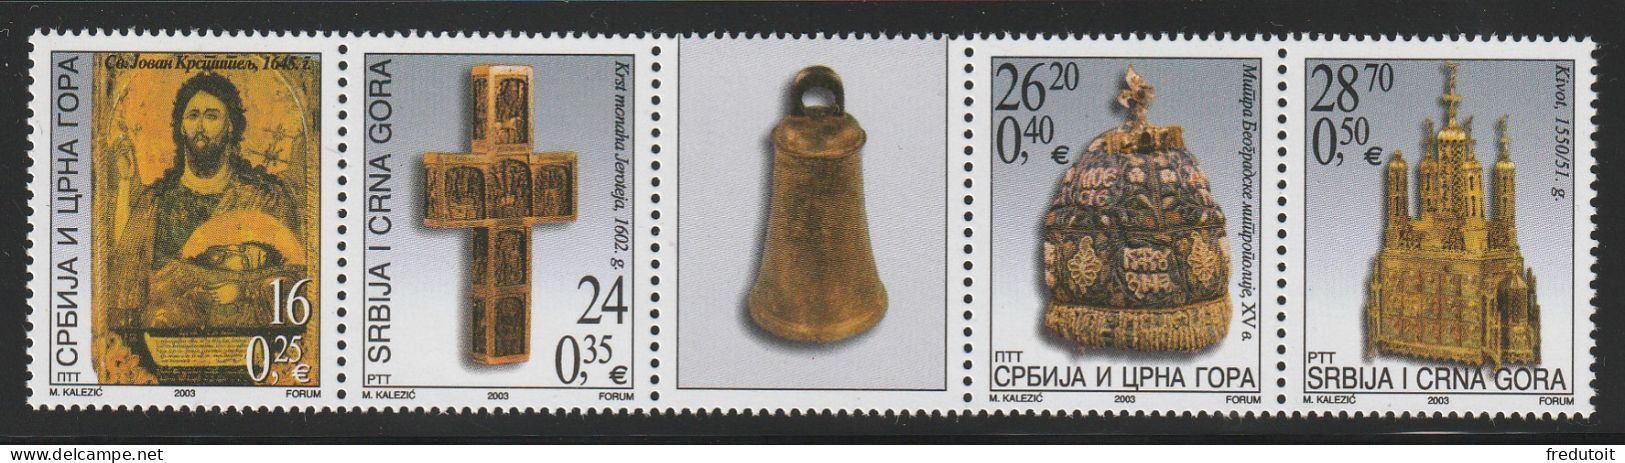 Serbie Et Montenegro - N°2998/3001 ** (2003) Pièces Du Musée De L'église Orthodoxe Serbe. - Serbie